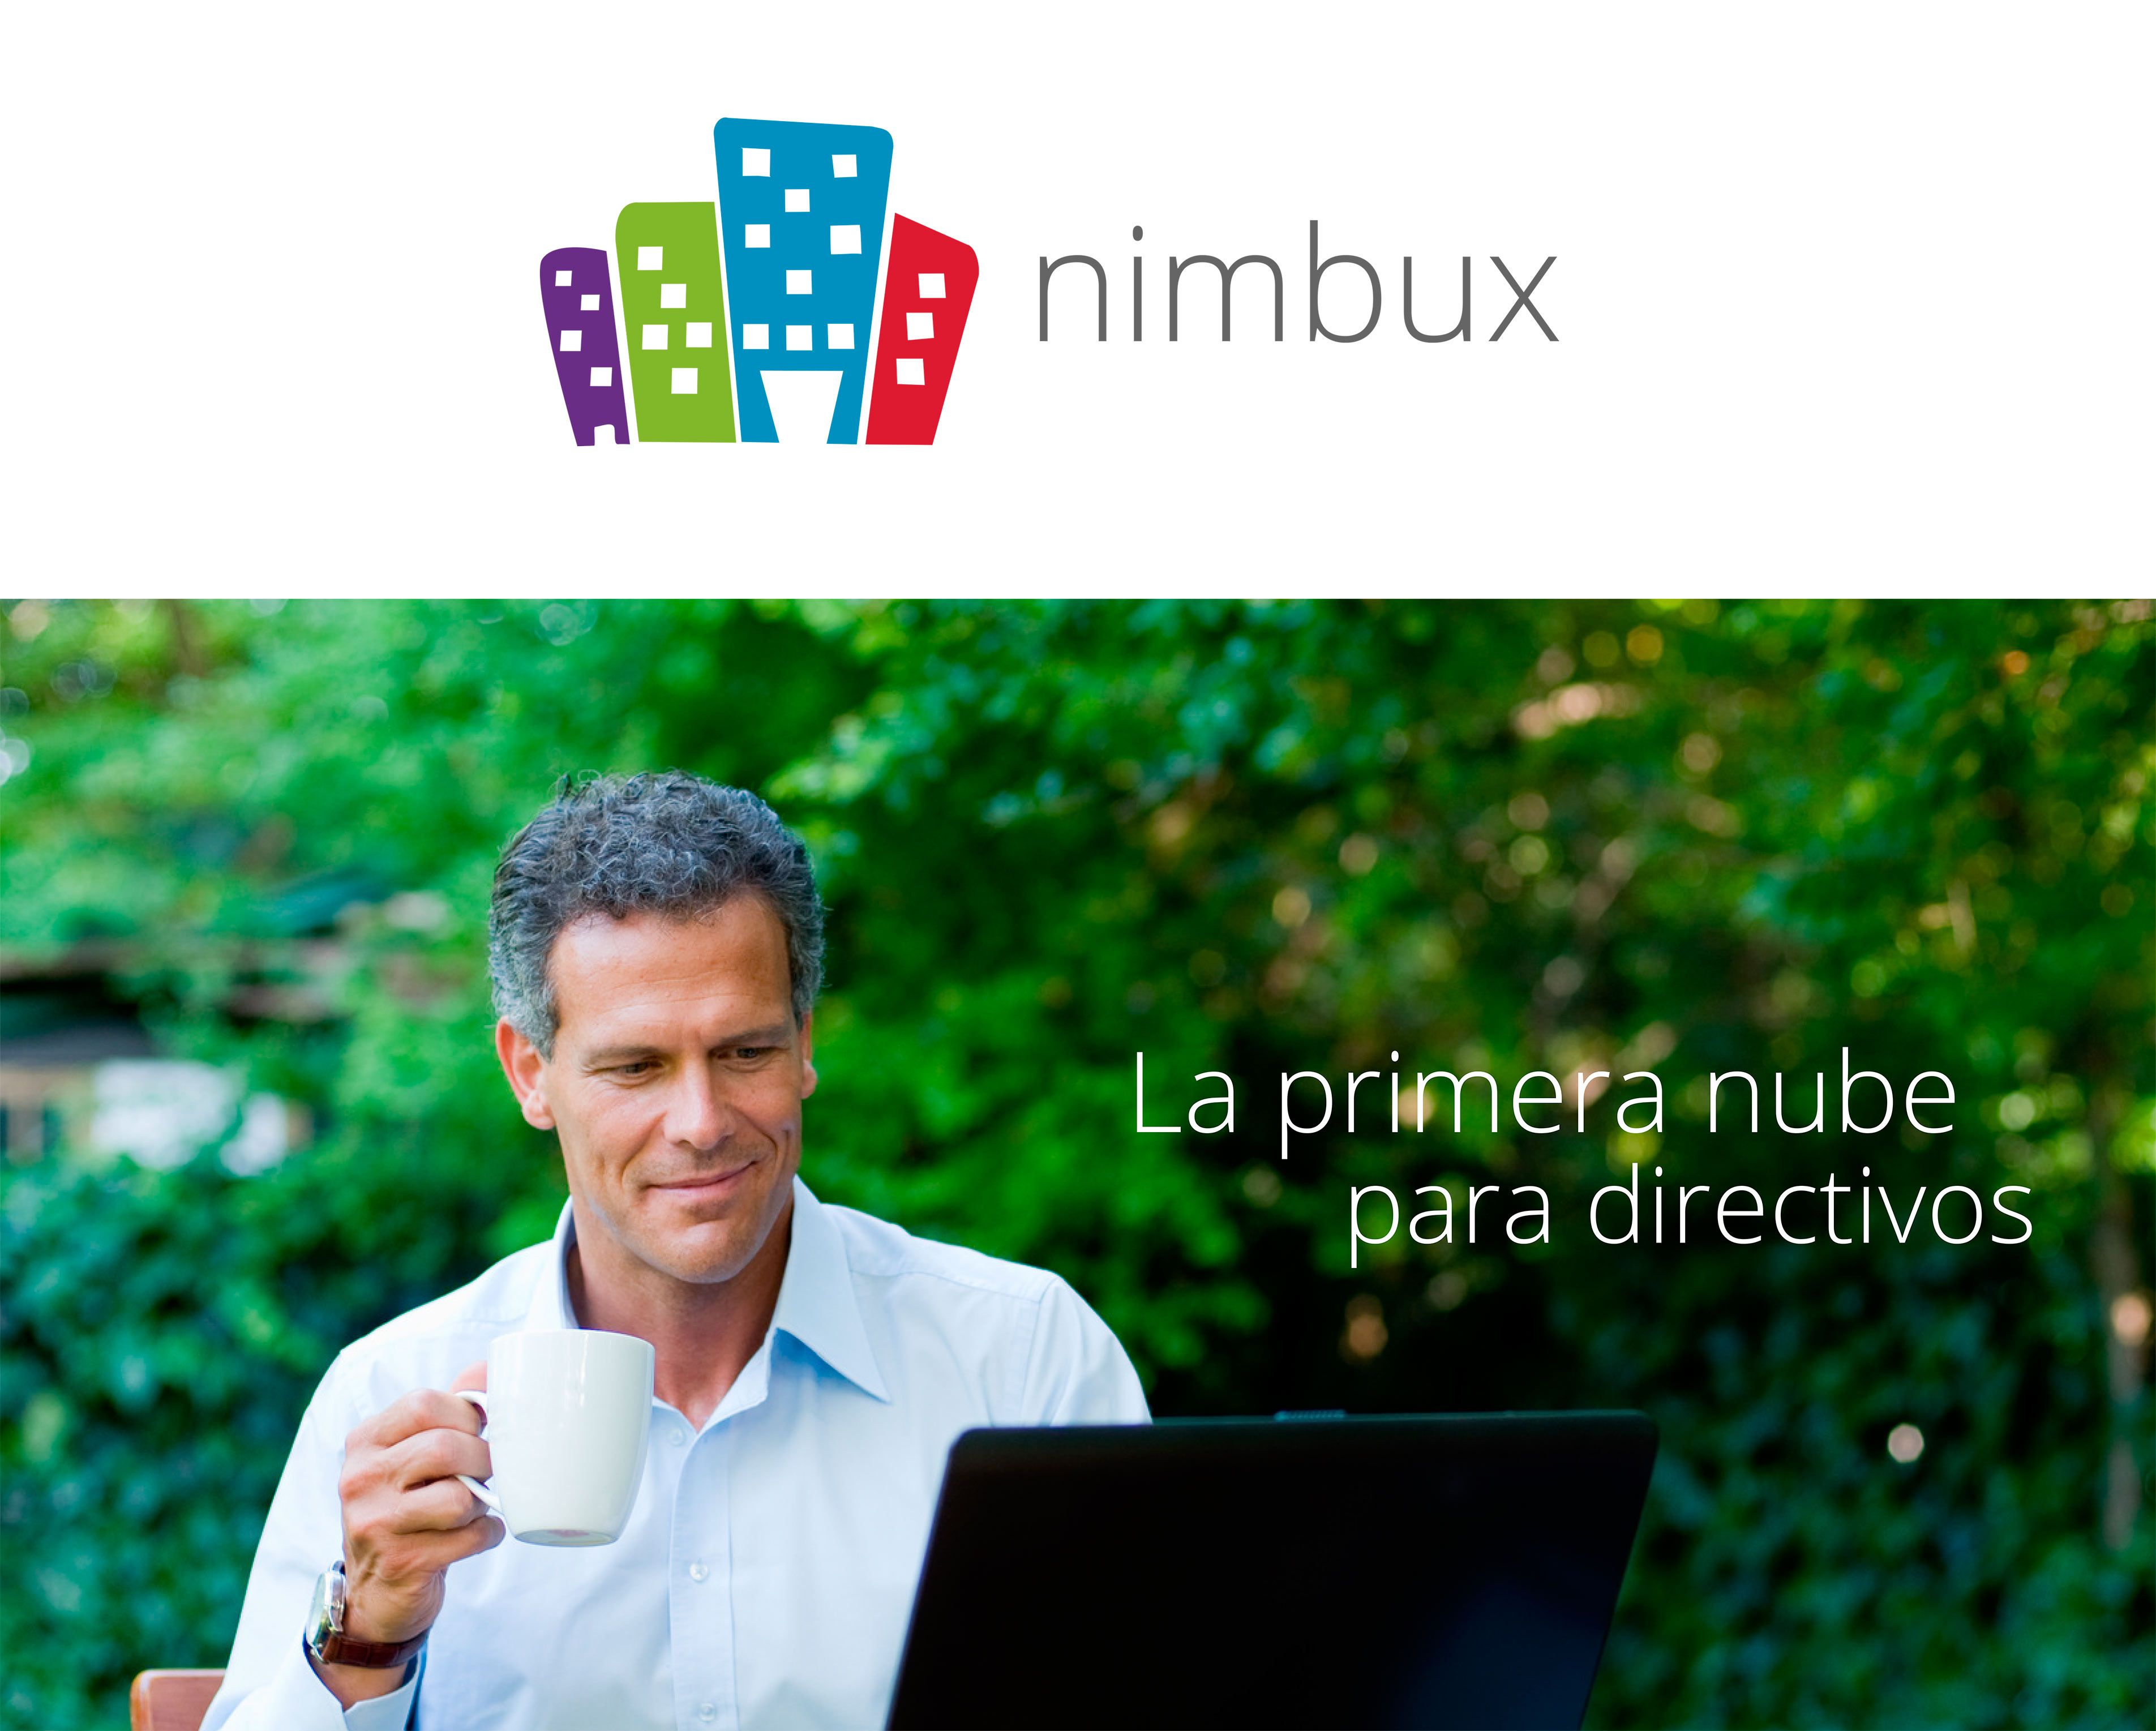 Nimbux.net La primera nube para directivos